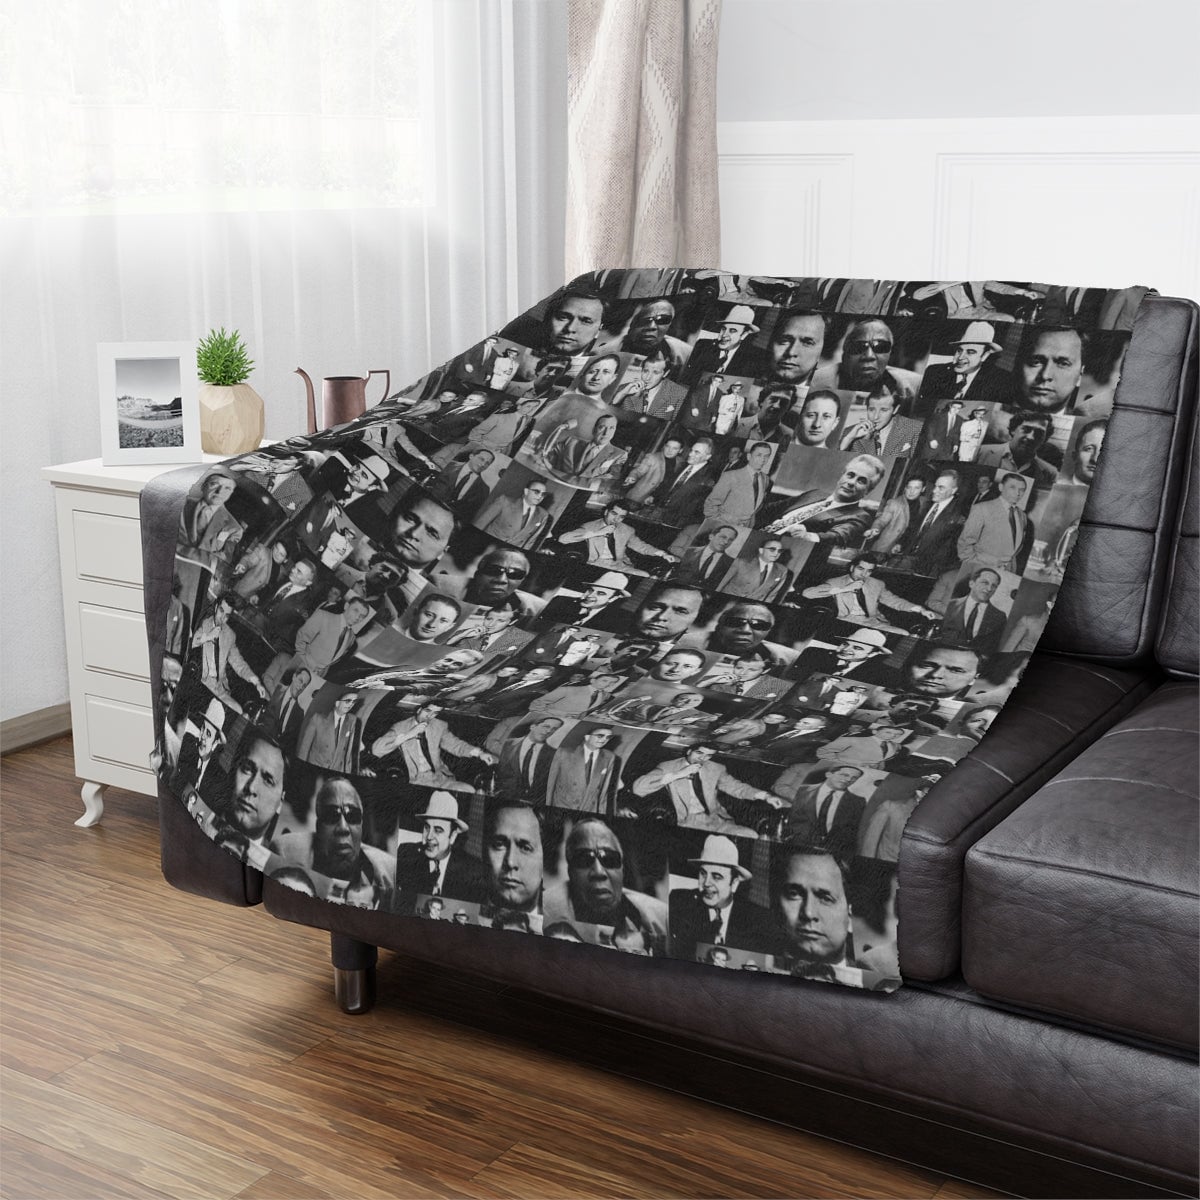 Mobster Fan's Dream: The Best Minky Blanket